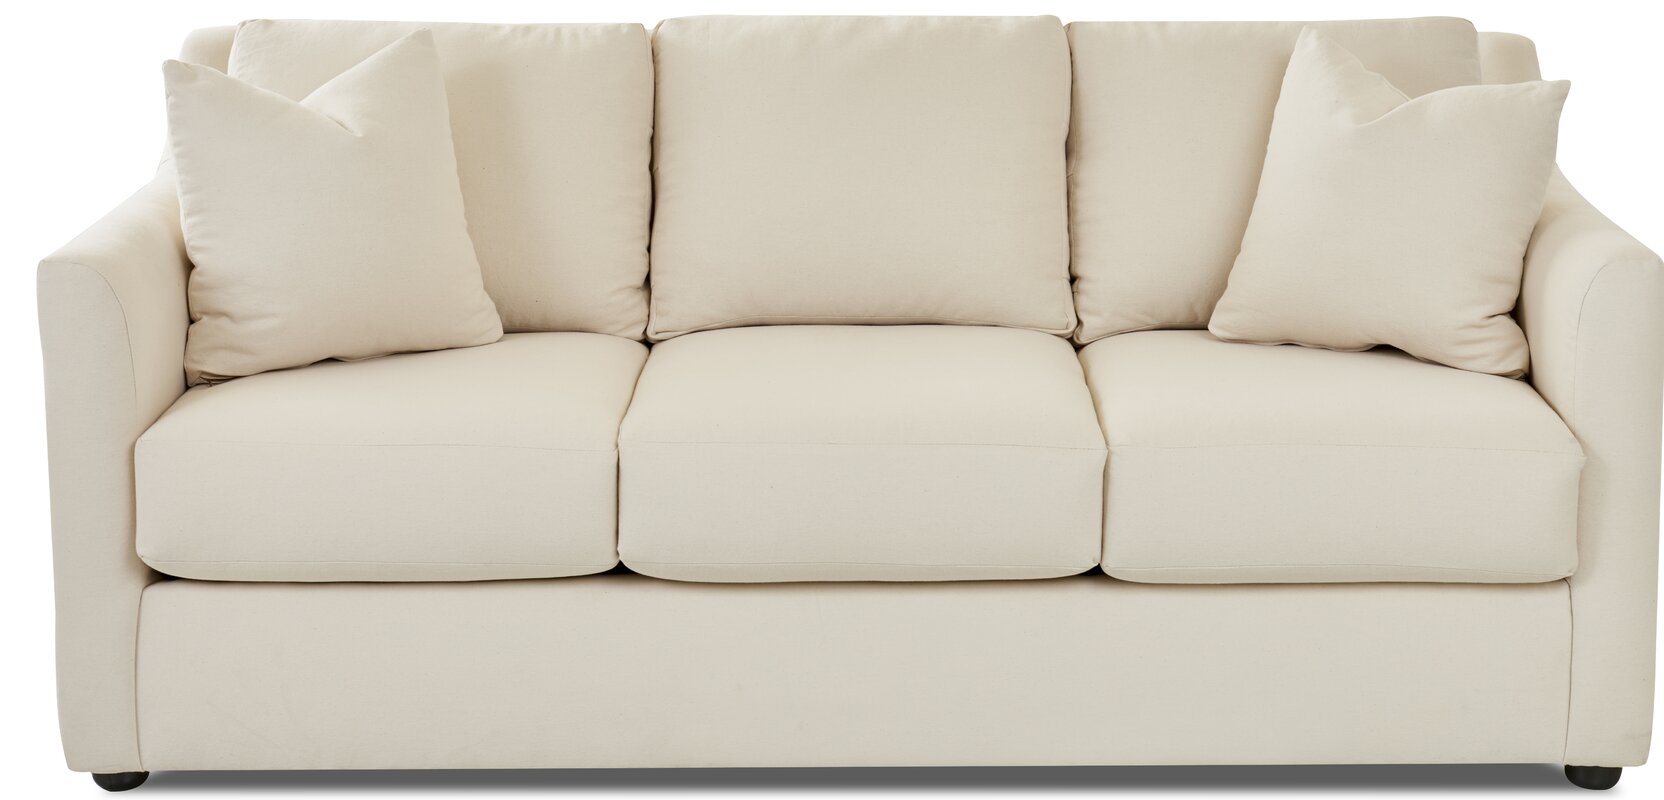 sofa beds wayfair canada